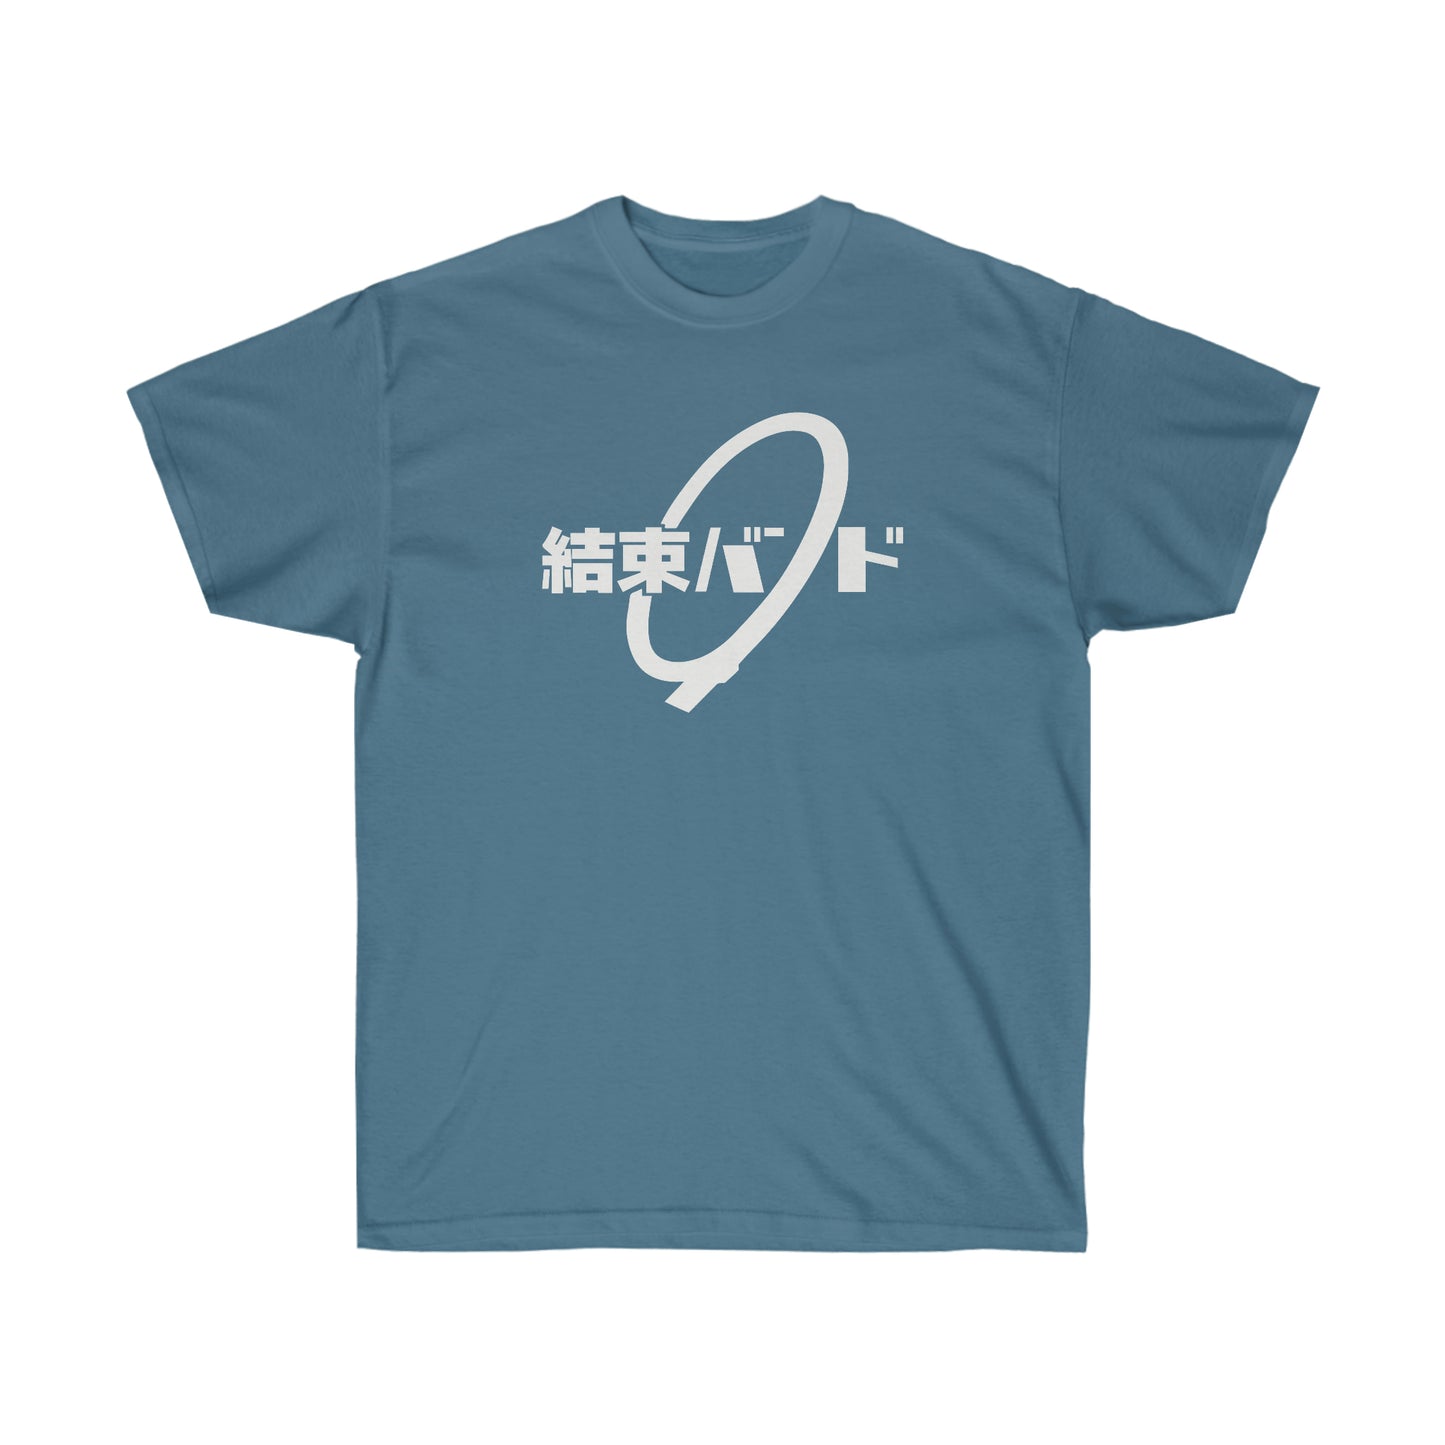 Kessokus Band shirt T-Shirt